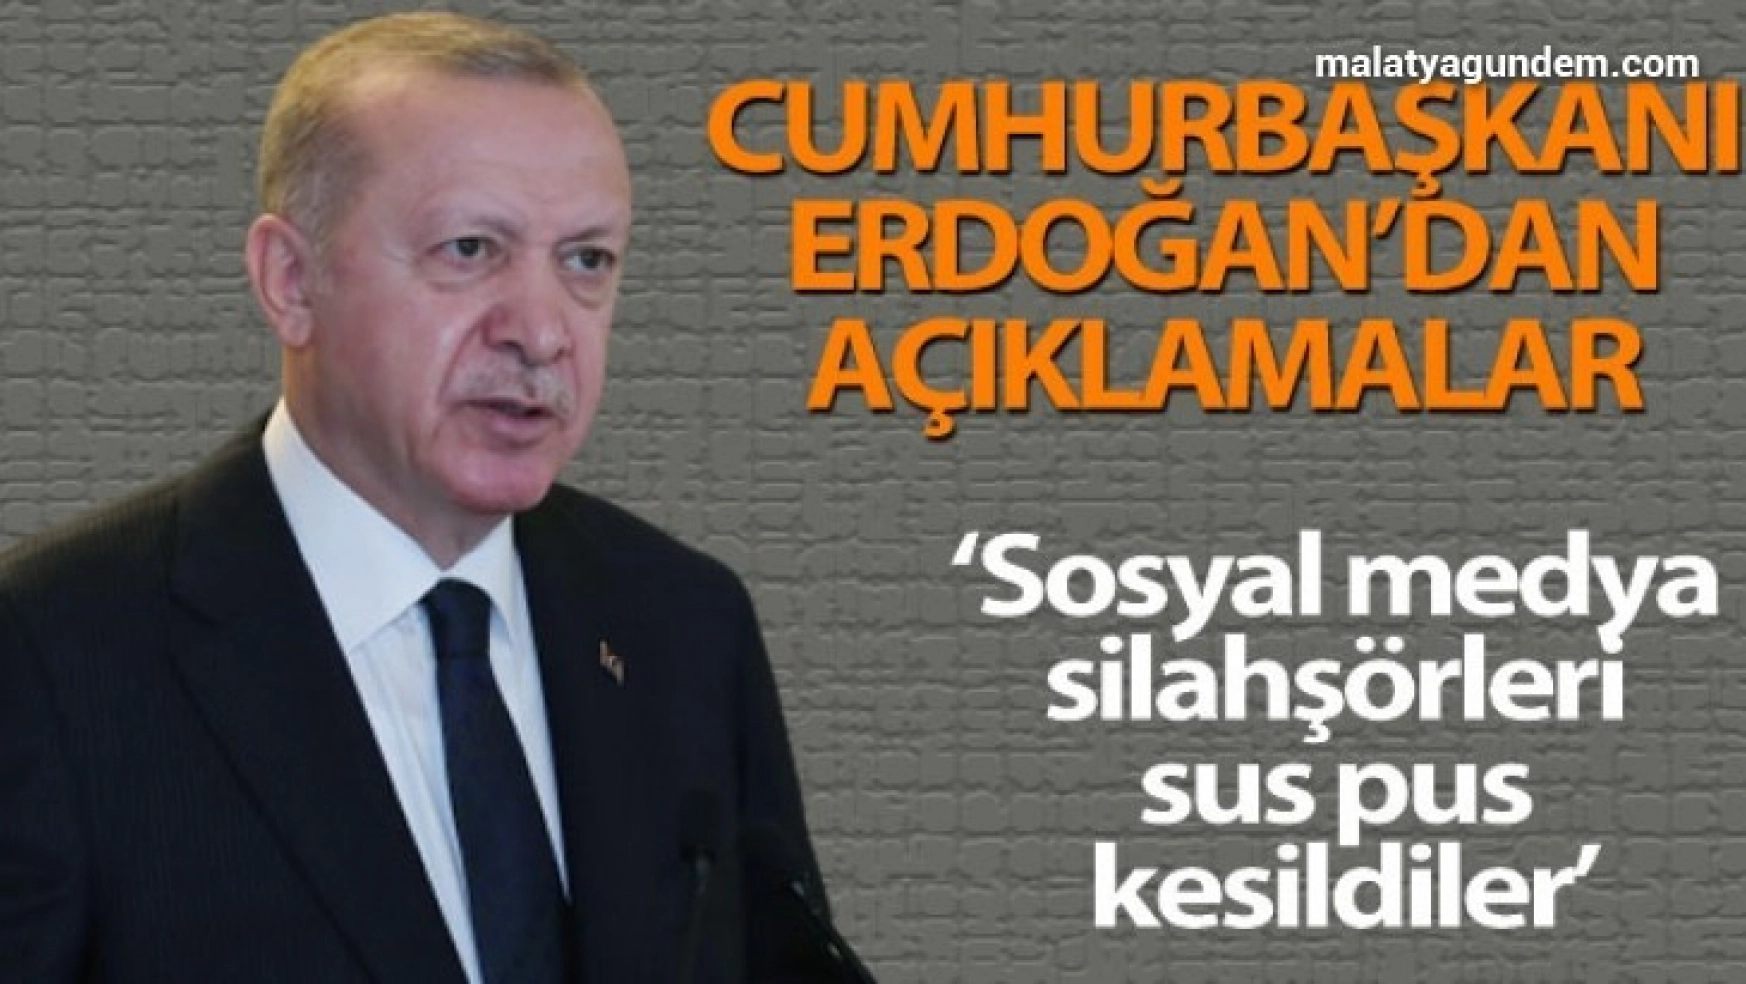 Cumhurbaşkanı Erdoğan: 'Sosyal medya silahşörleri mesele CHP olunca sus pus kesildiler'